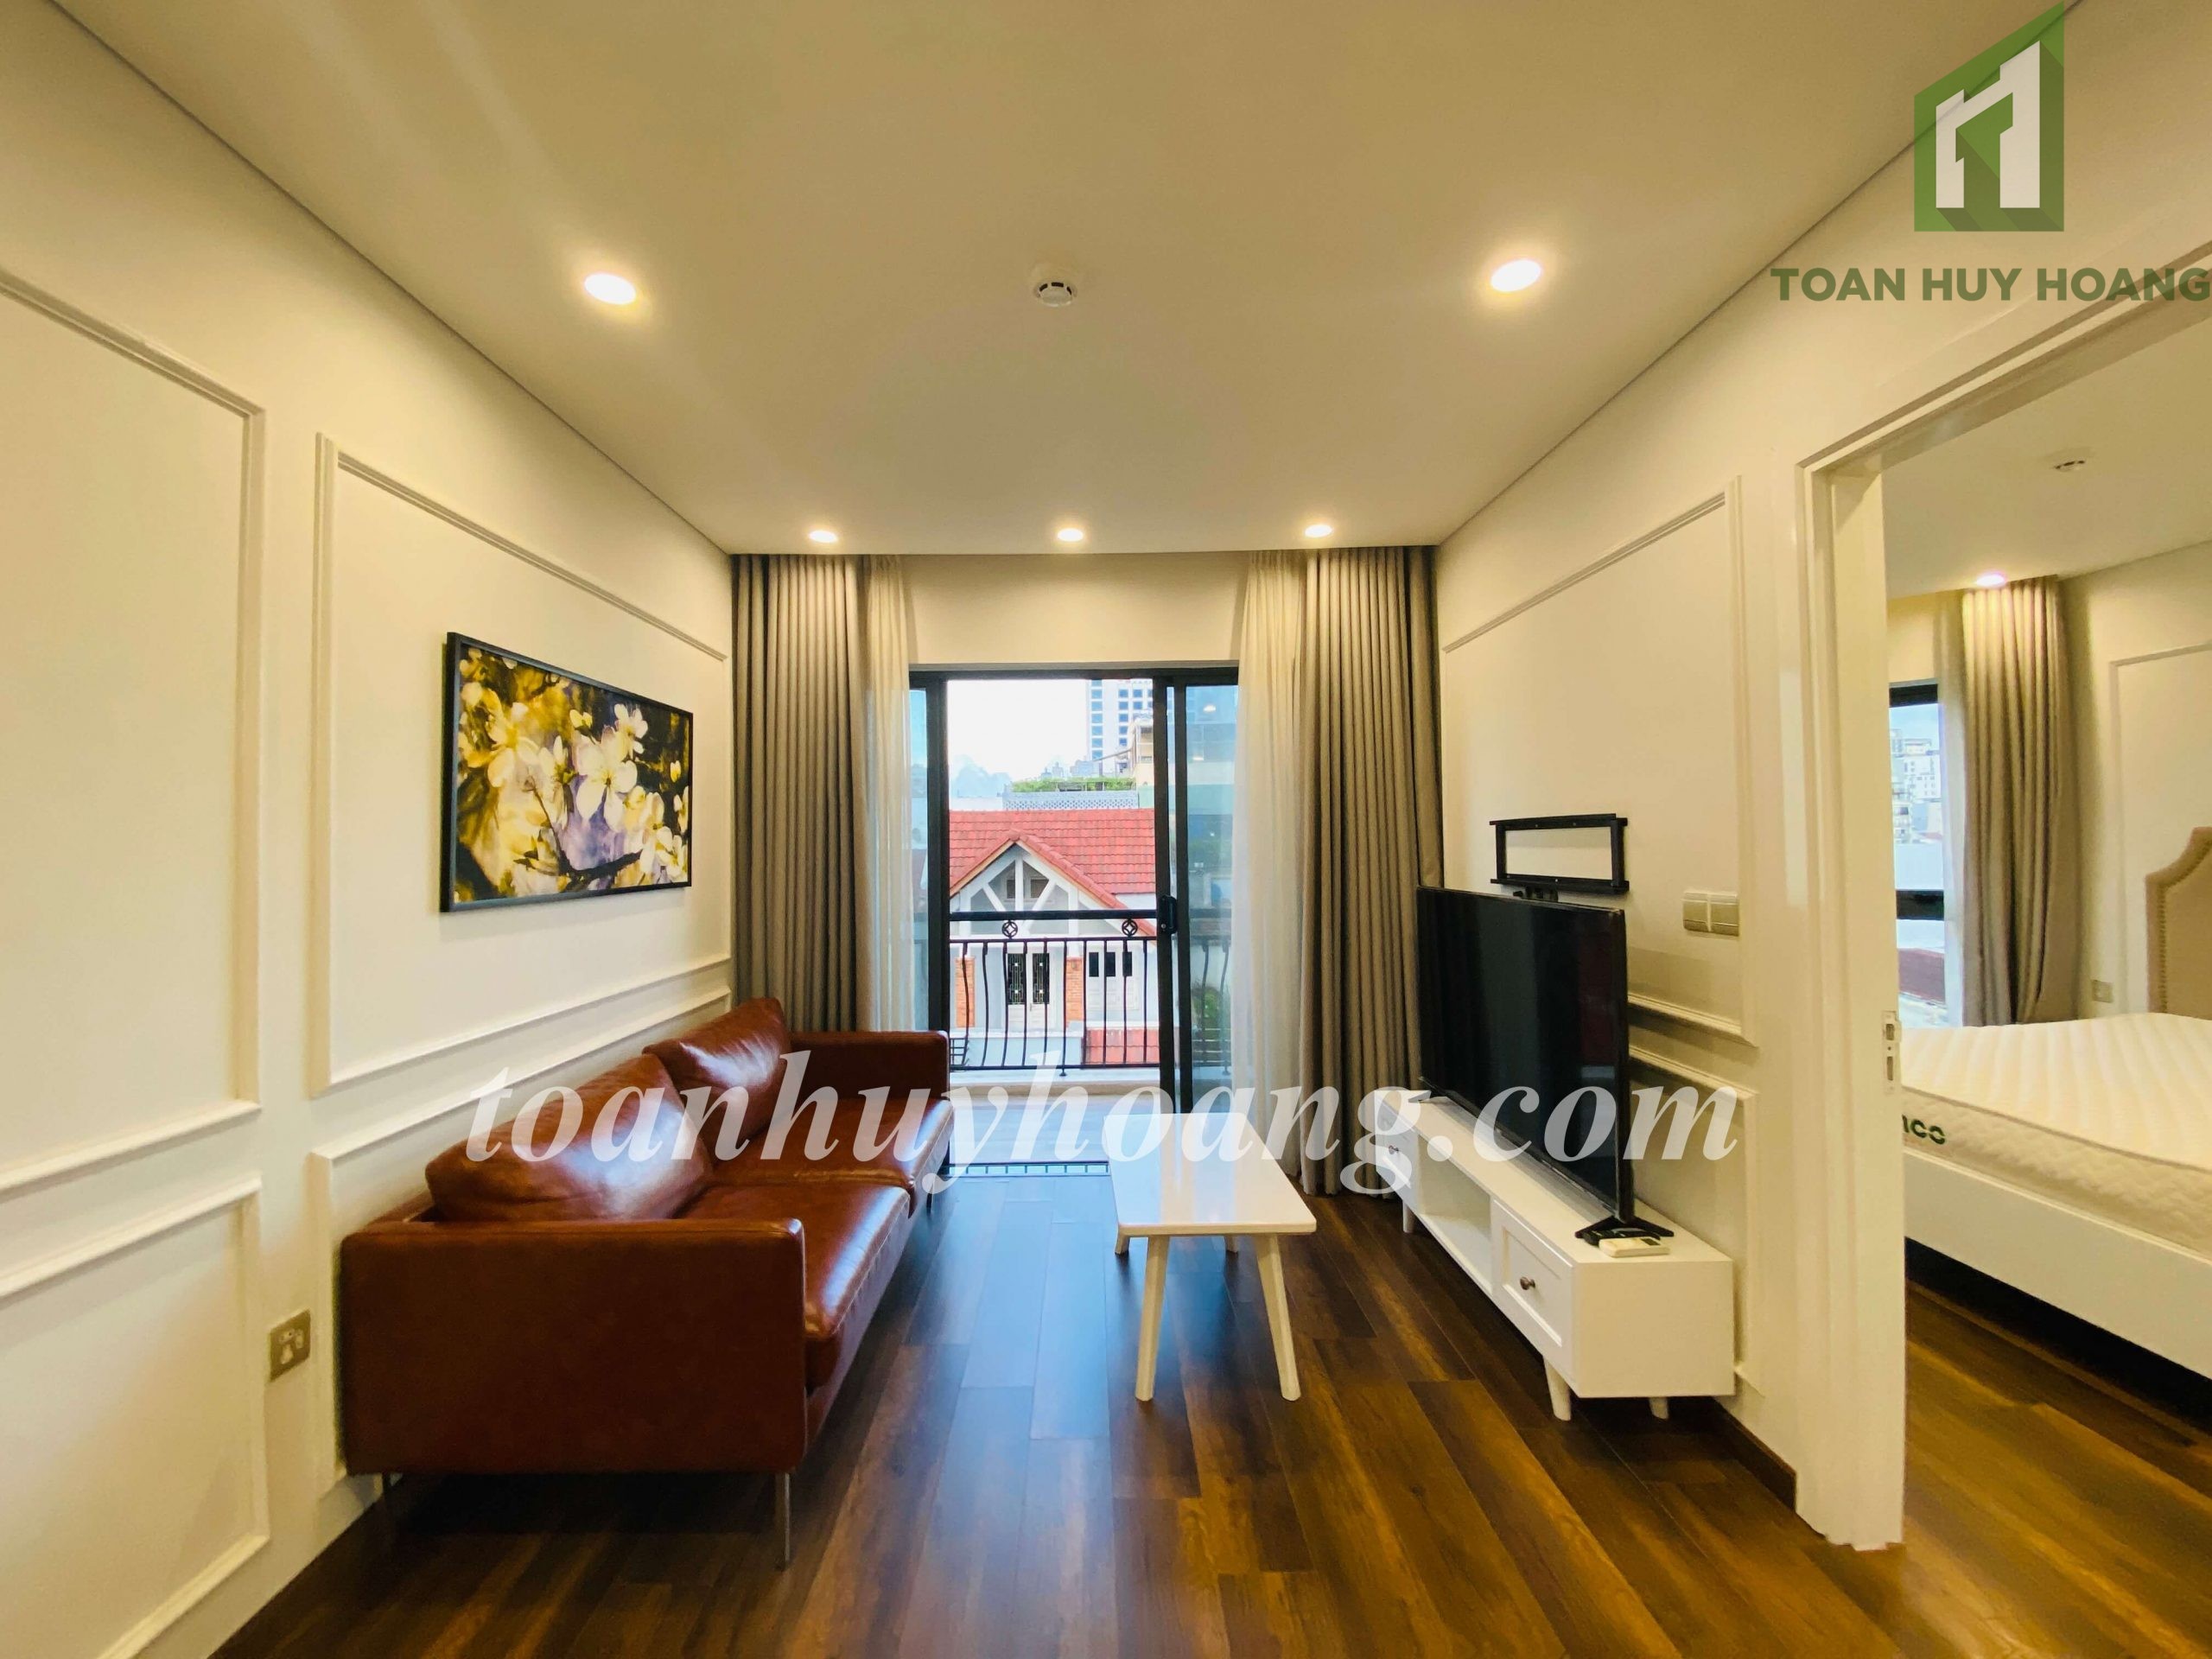 Stunning One Bedroom Apartment | Căn Hộ Đẹp 1PN